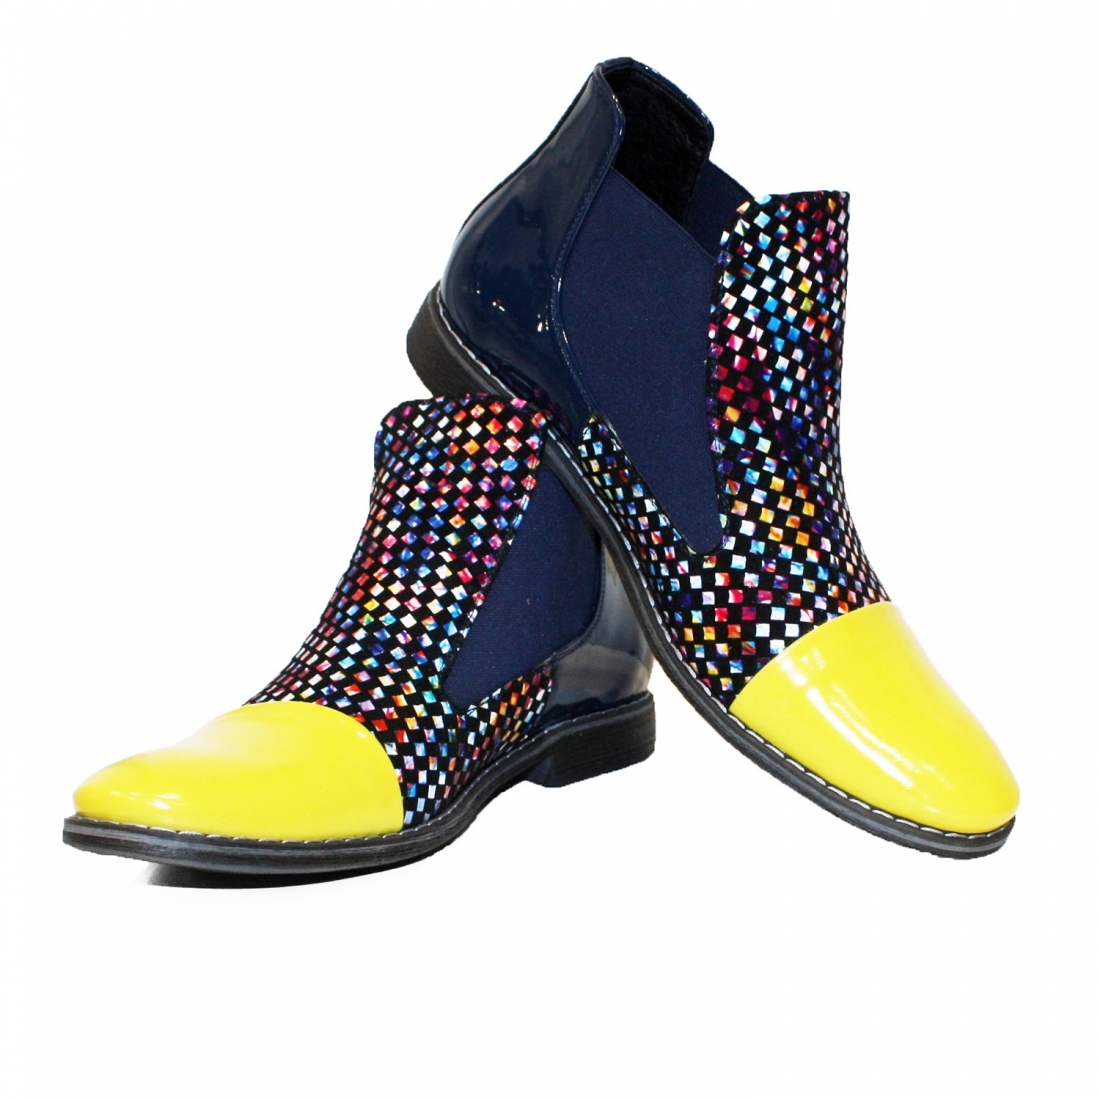 Modello Colorello - チェルシーブーツ - Handmade Colorful Italian Leather Shoes